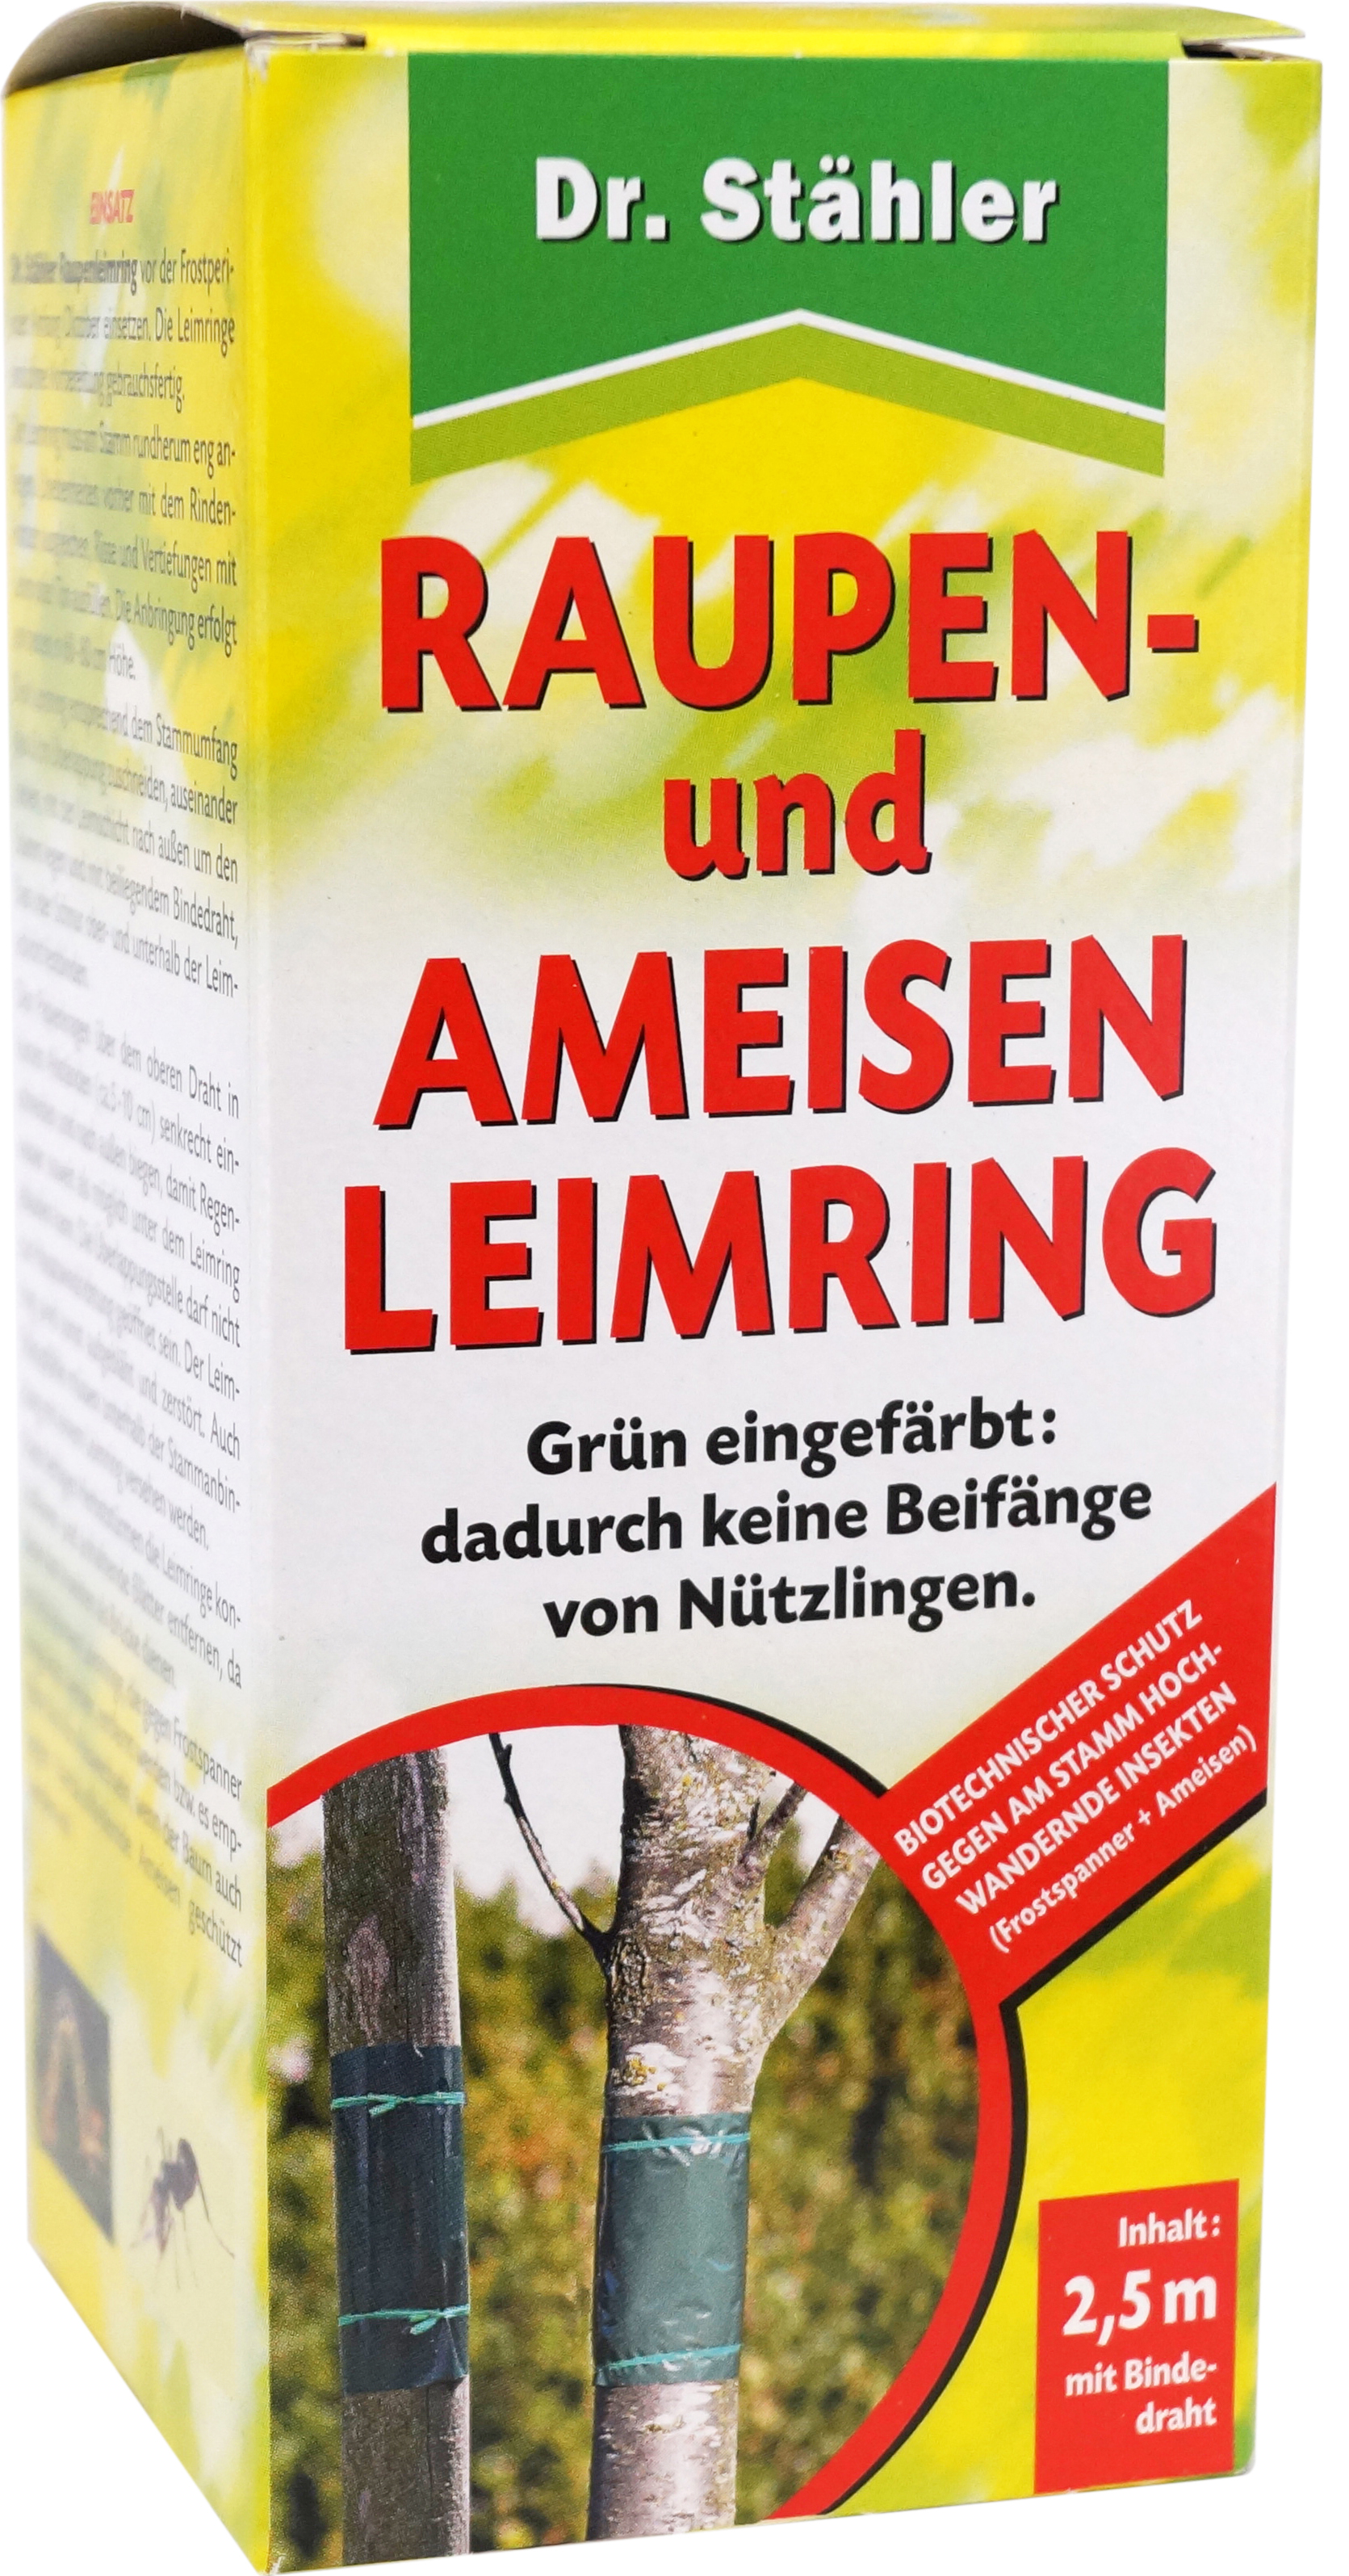 02169 - Raupen- und Ameisen Leimring 2,5 m 